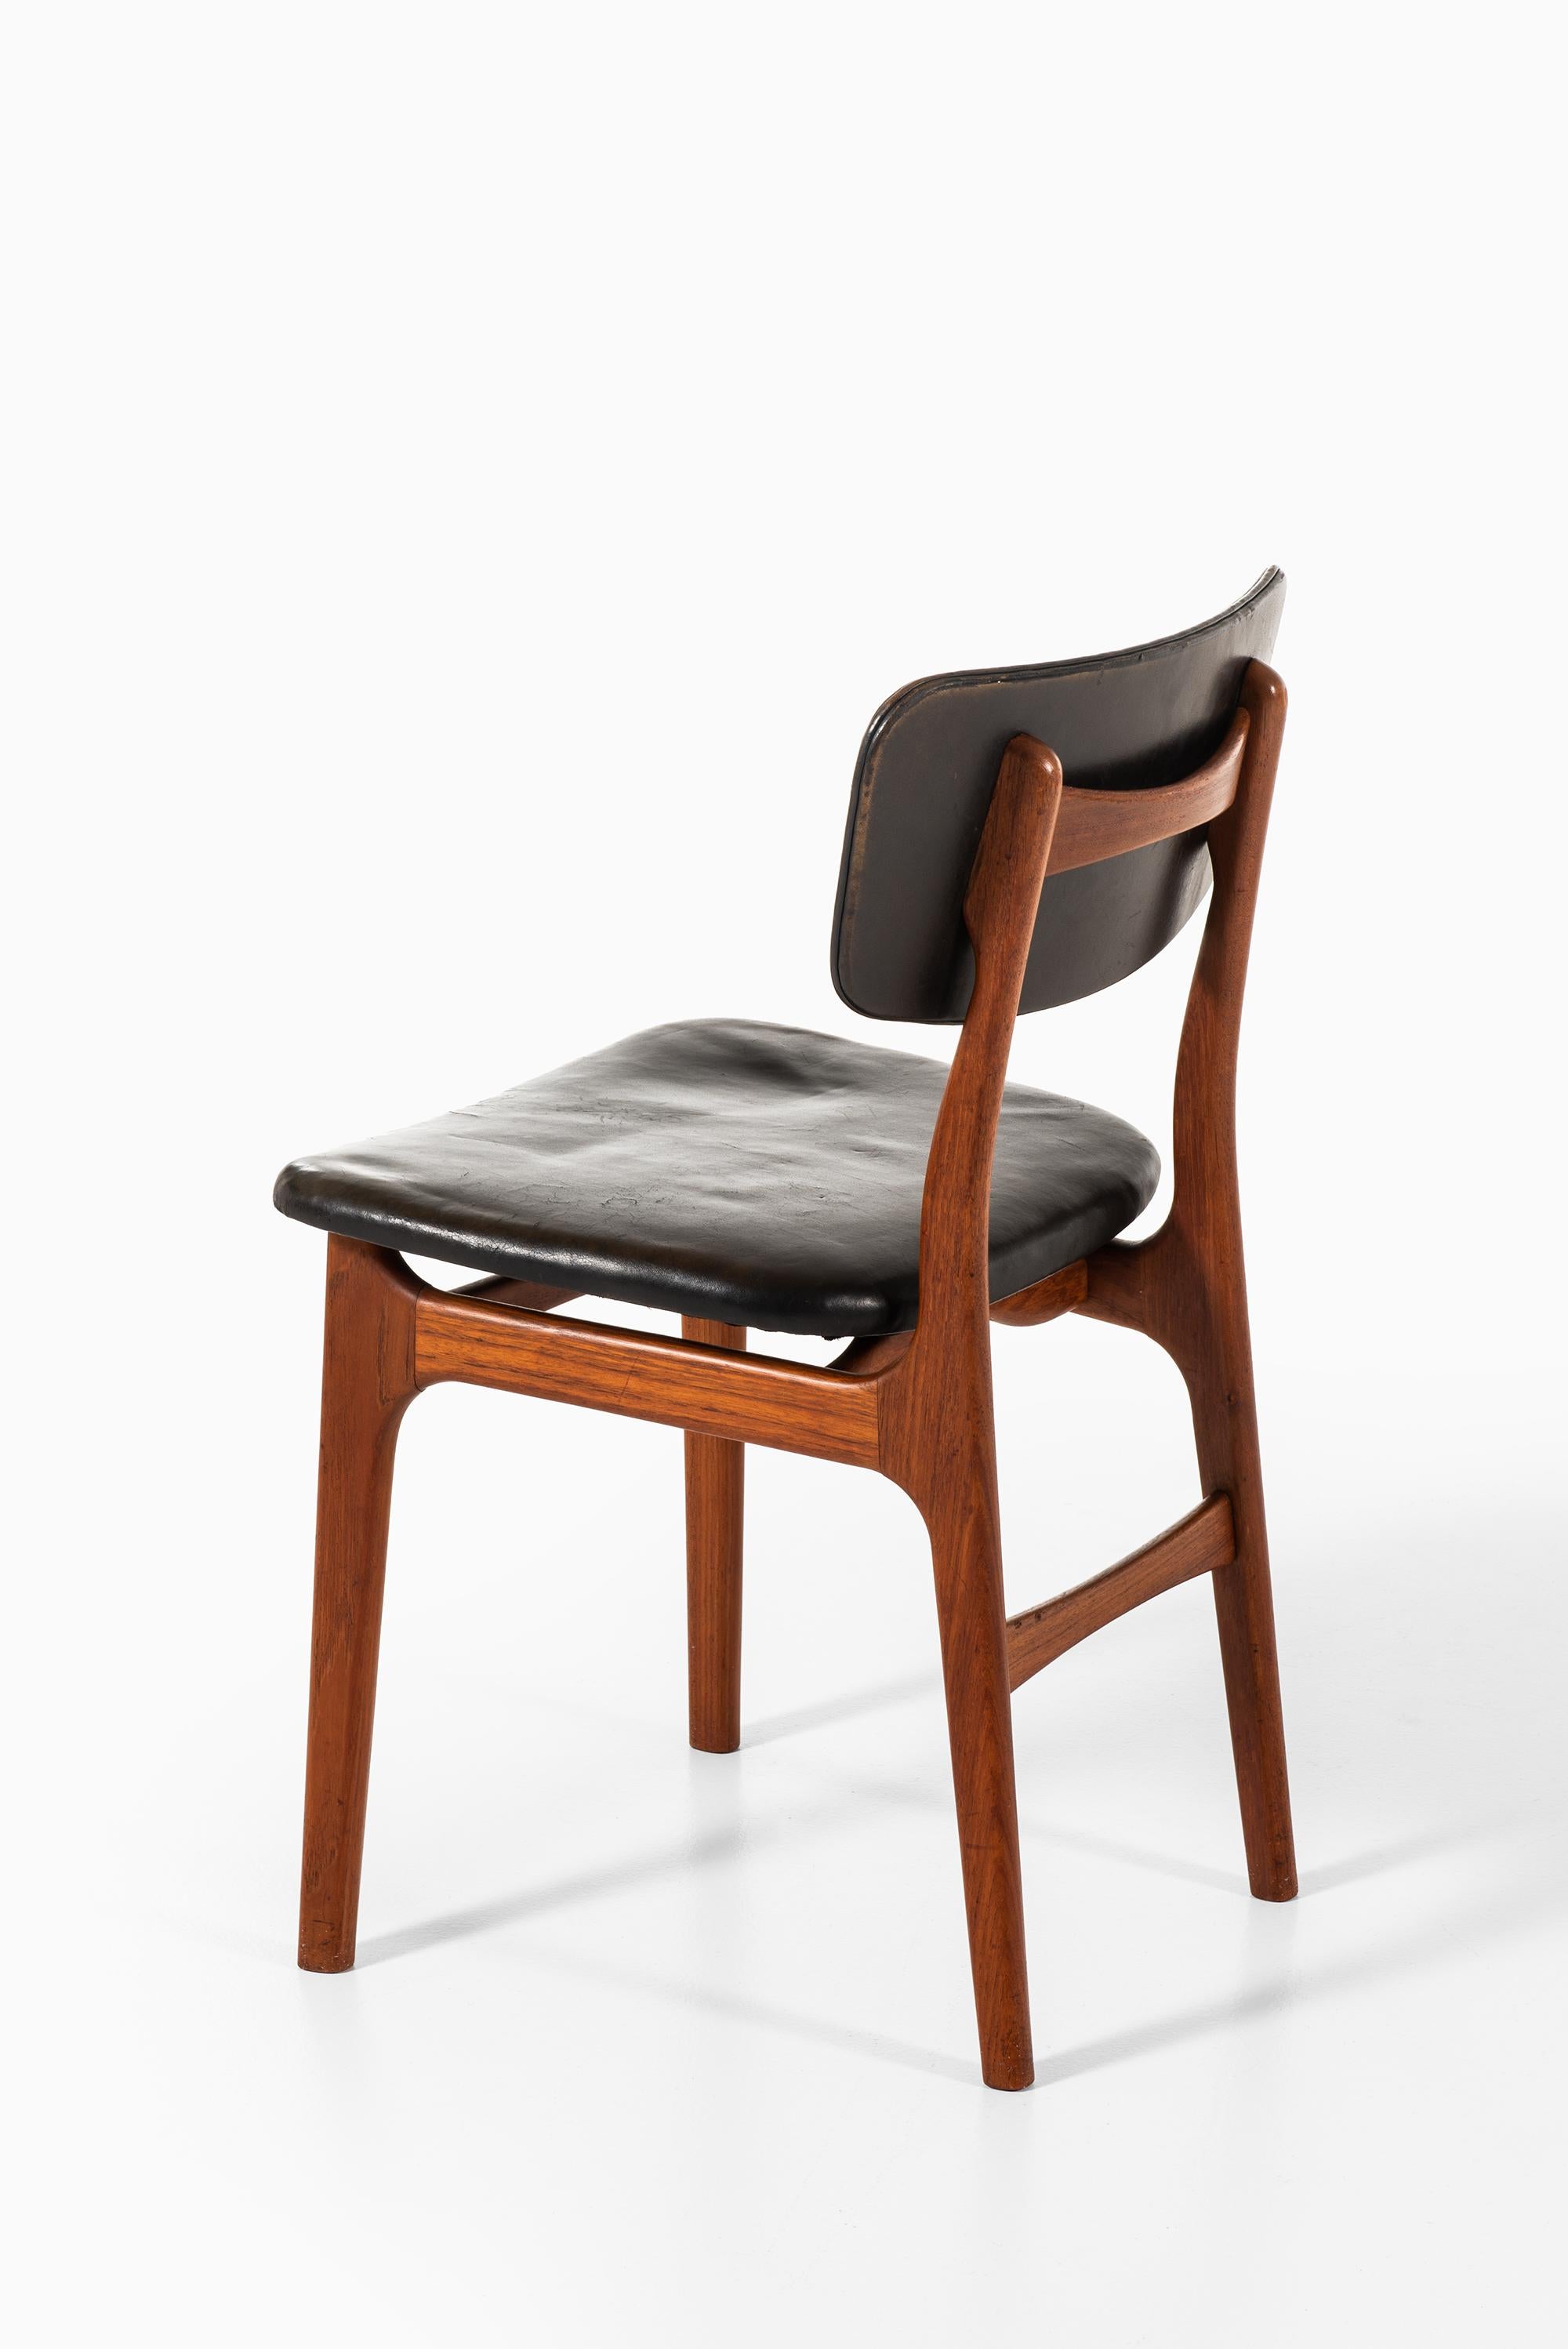 Leather Gustav Bertelsen Dining Chairs Produced by Gustav Bertelsen in Denmark